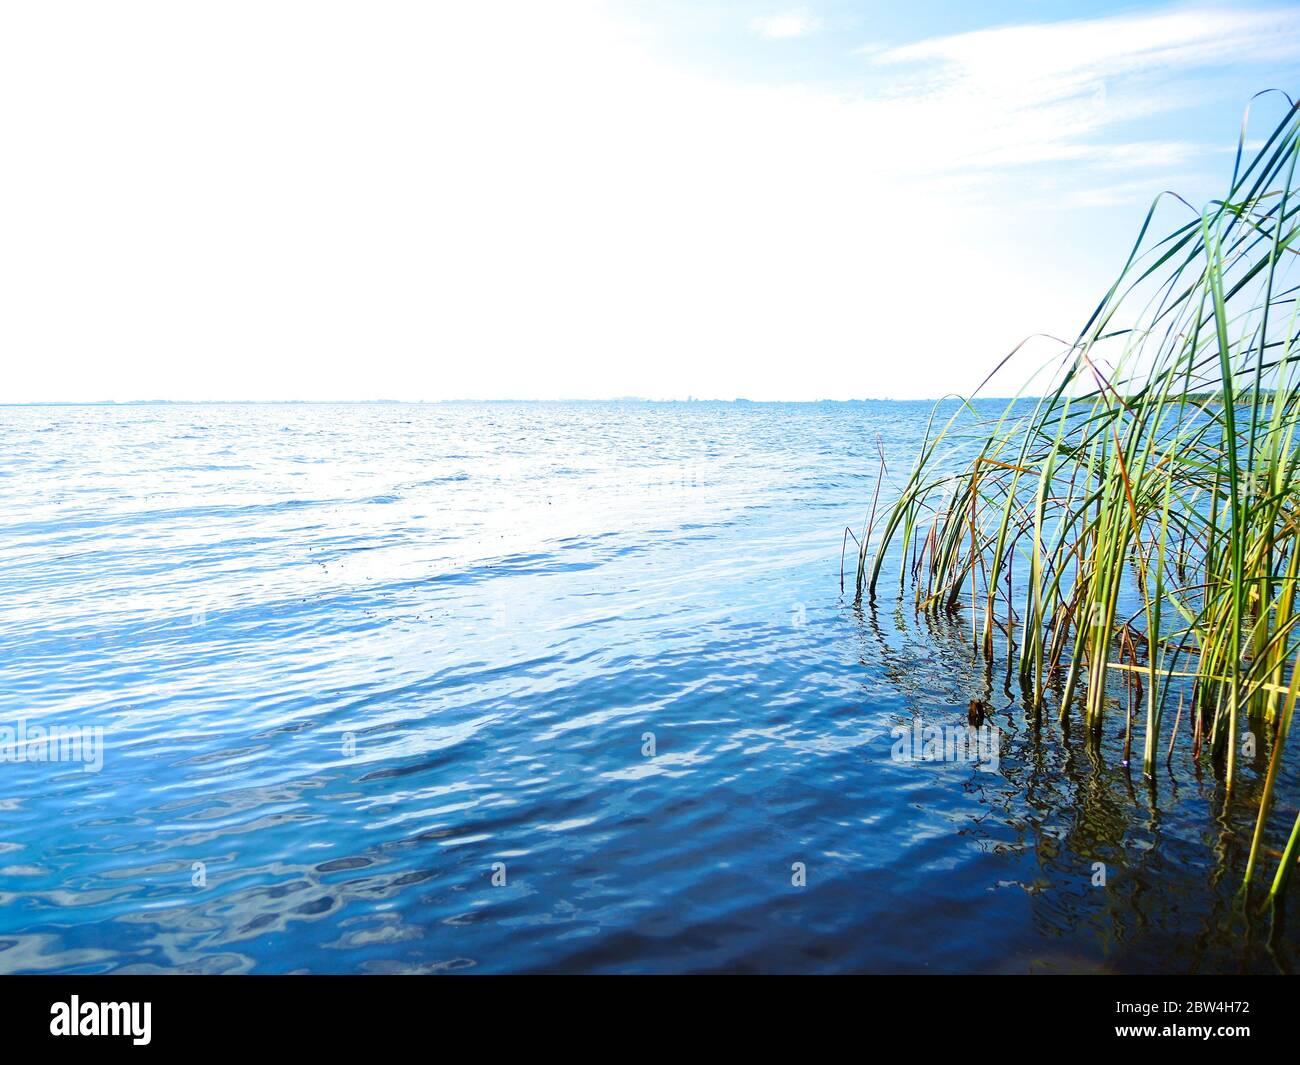 Ein perfekter Sommertag an einem See - ruhiges blaues Wasser und grünes Schilf, abgelegene Horizontlinie. Stockfoto